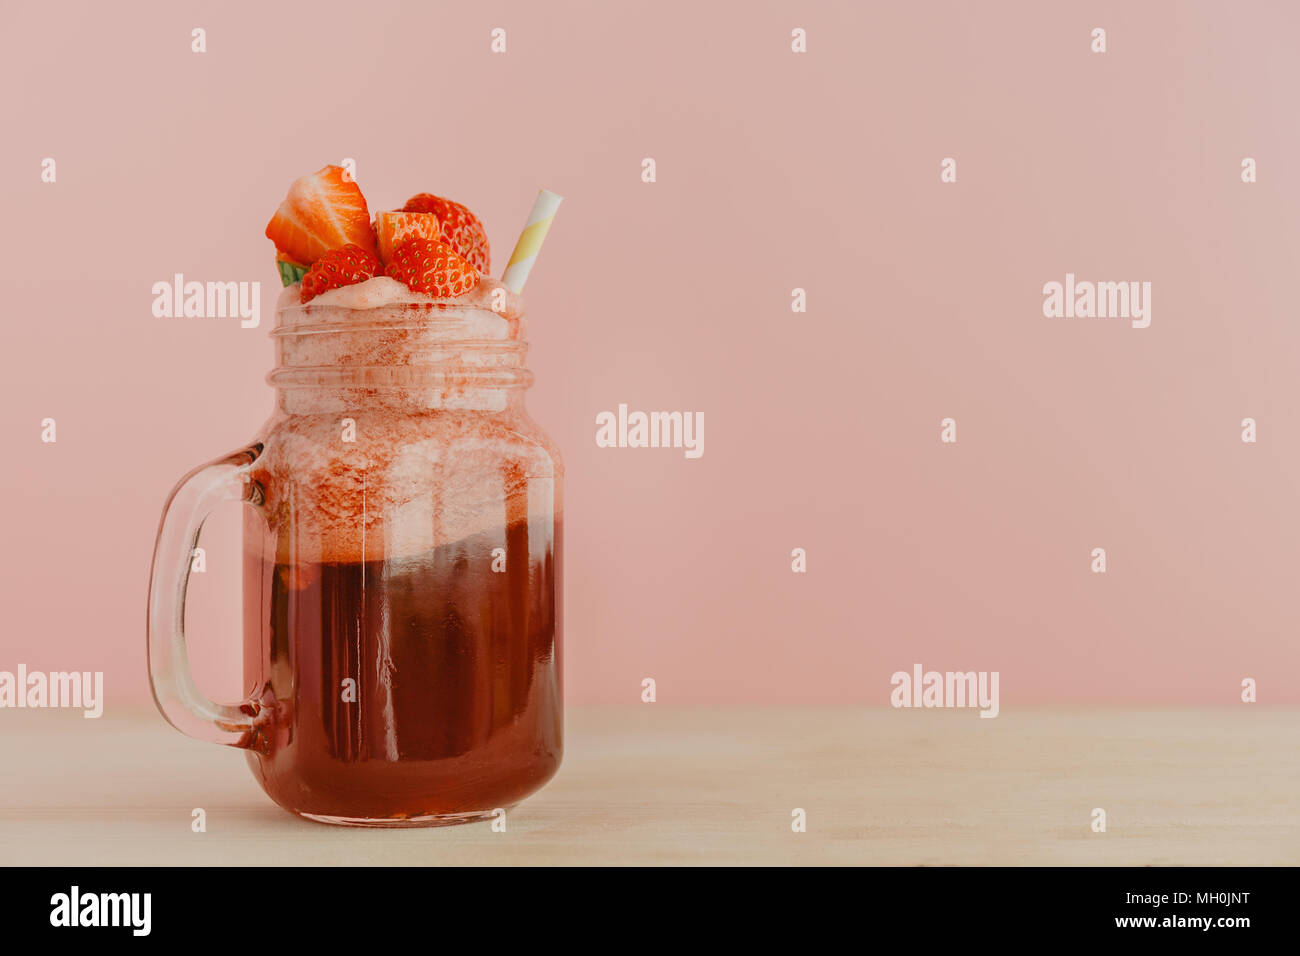 Vaso di vetro con colore rosso brillante limonata fatta di fragole guarnito con frutti di bosco e servite con paglia in rosa. Foto Stock